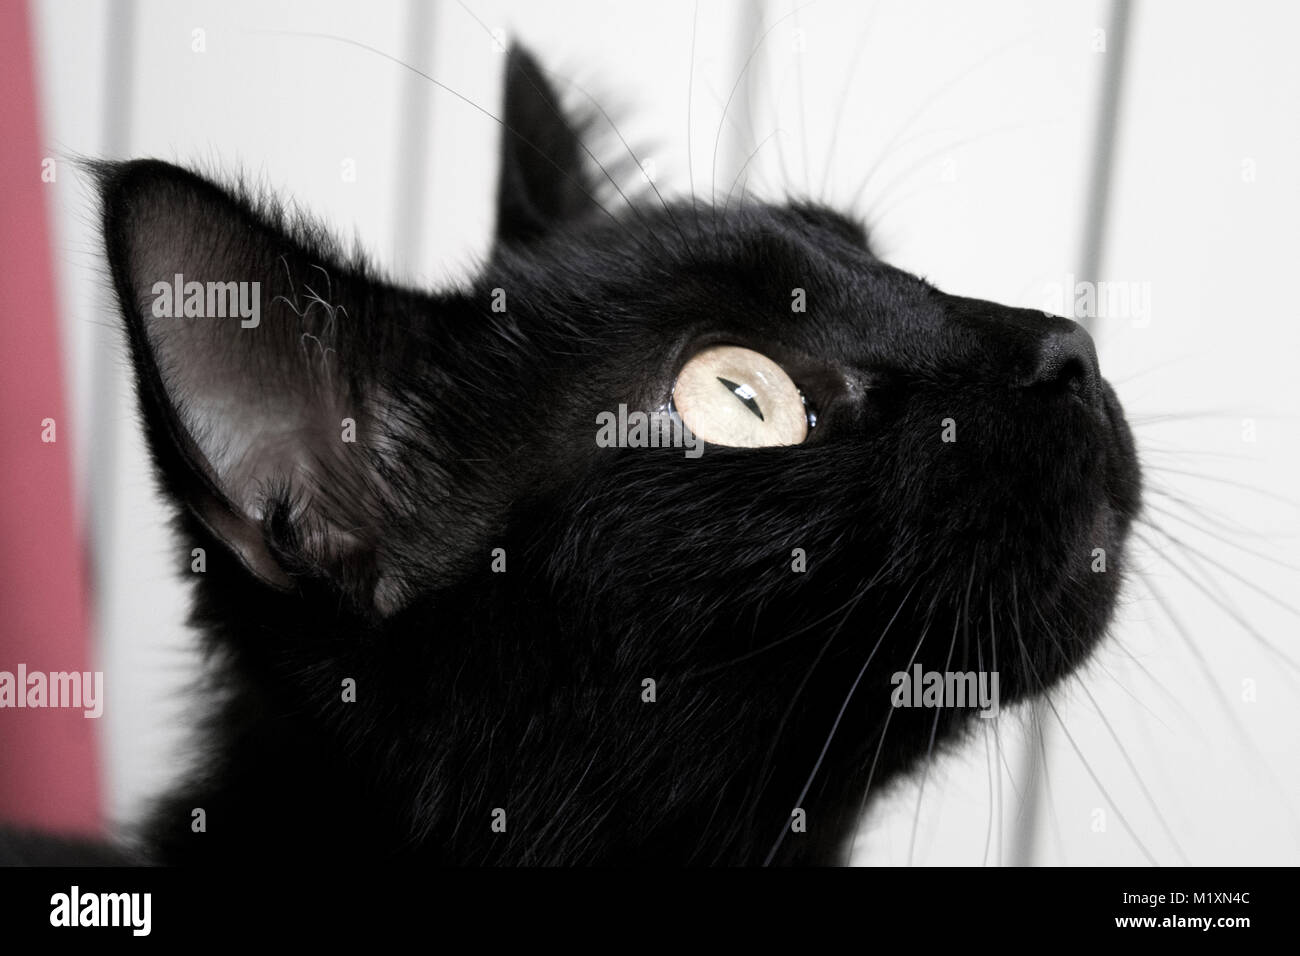 Un Chat Noir De Profil Looking Up Photo Stock Alamy